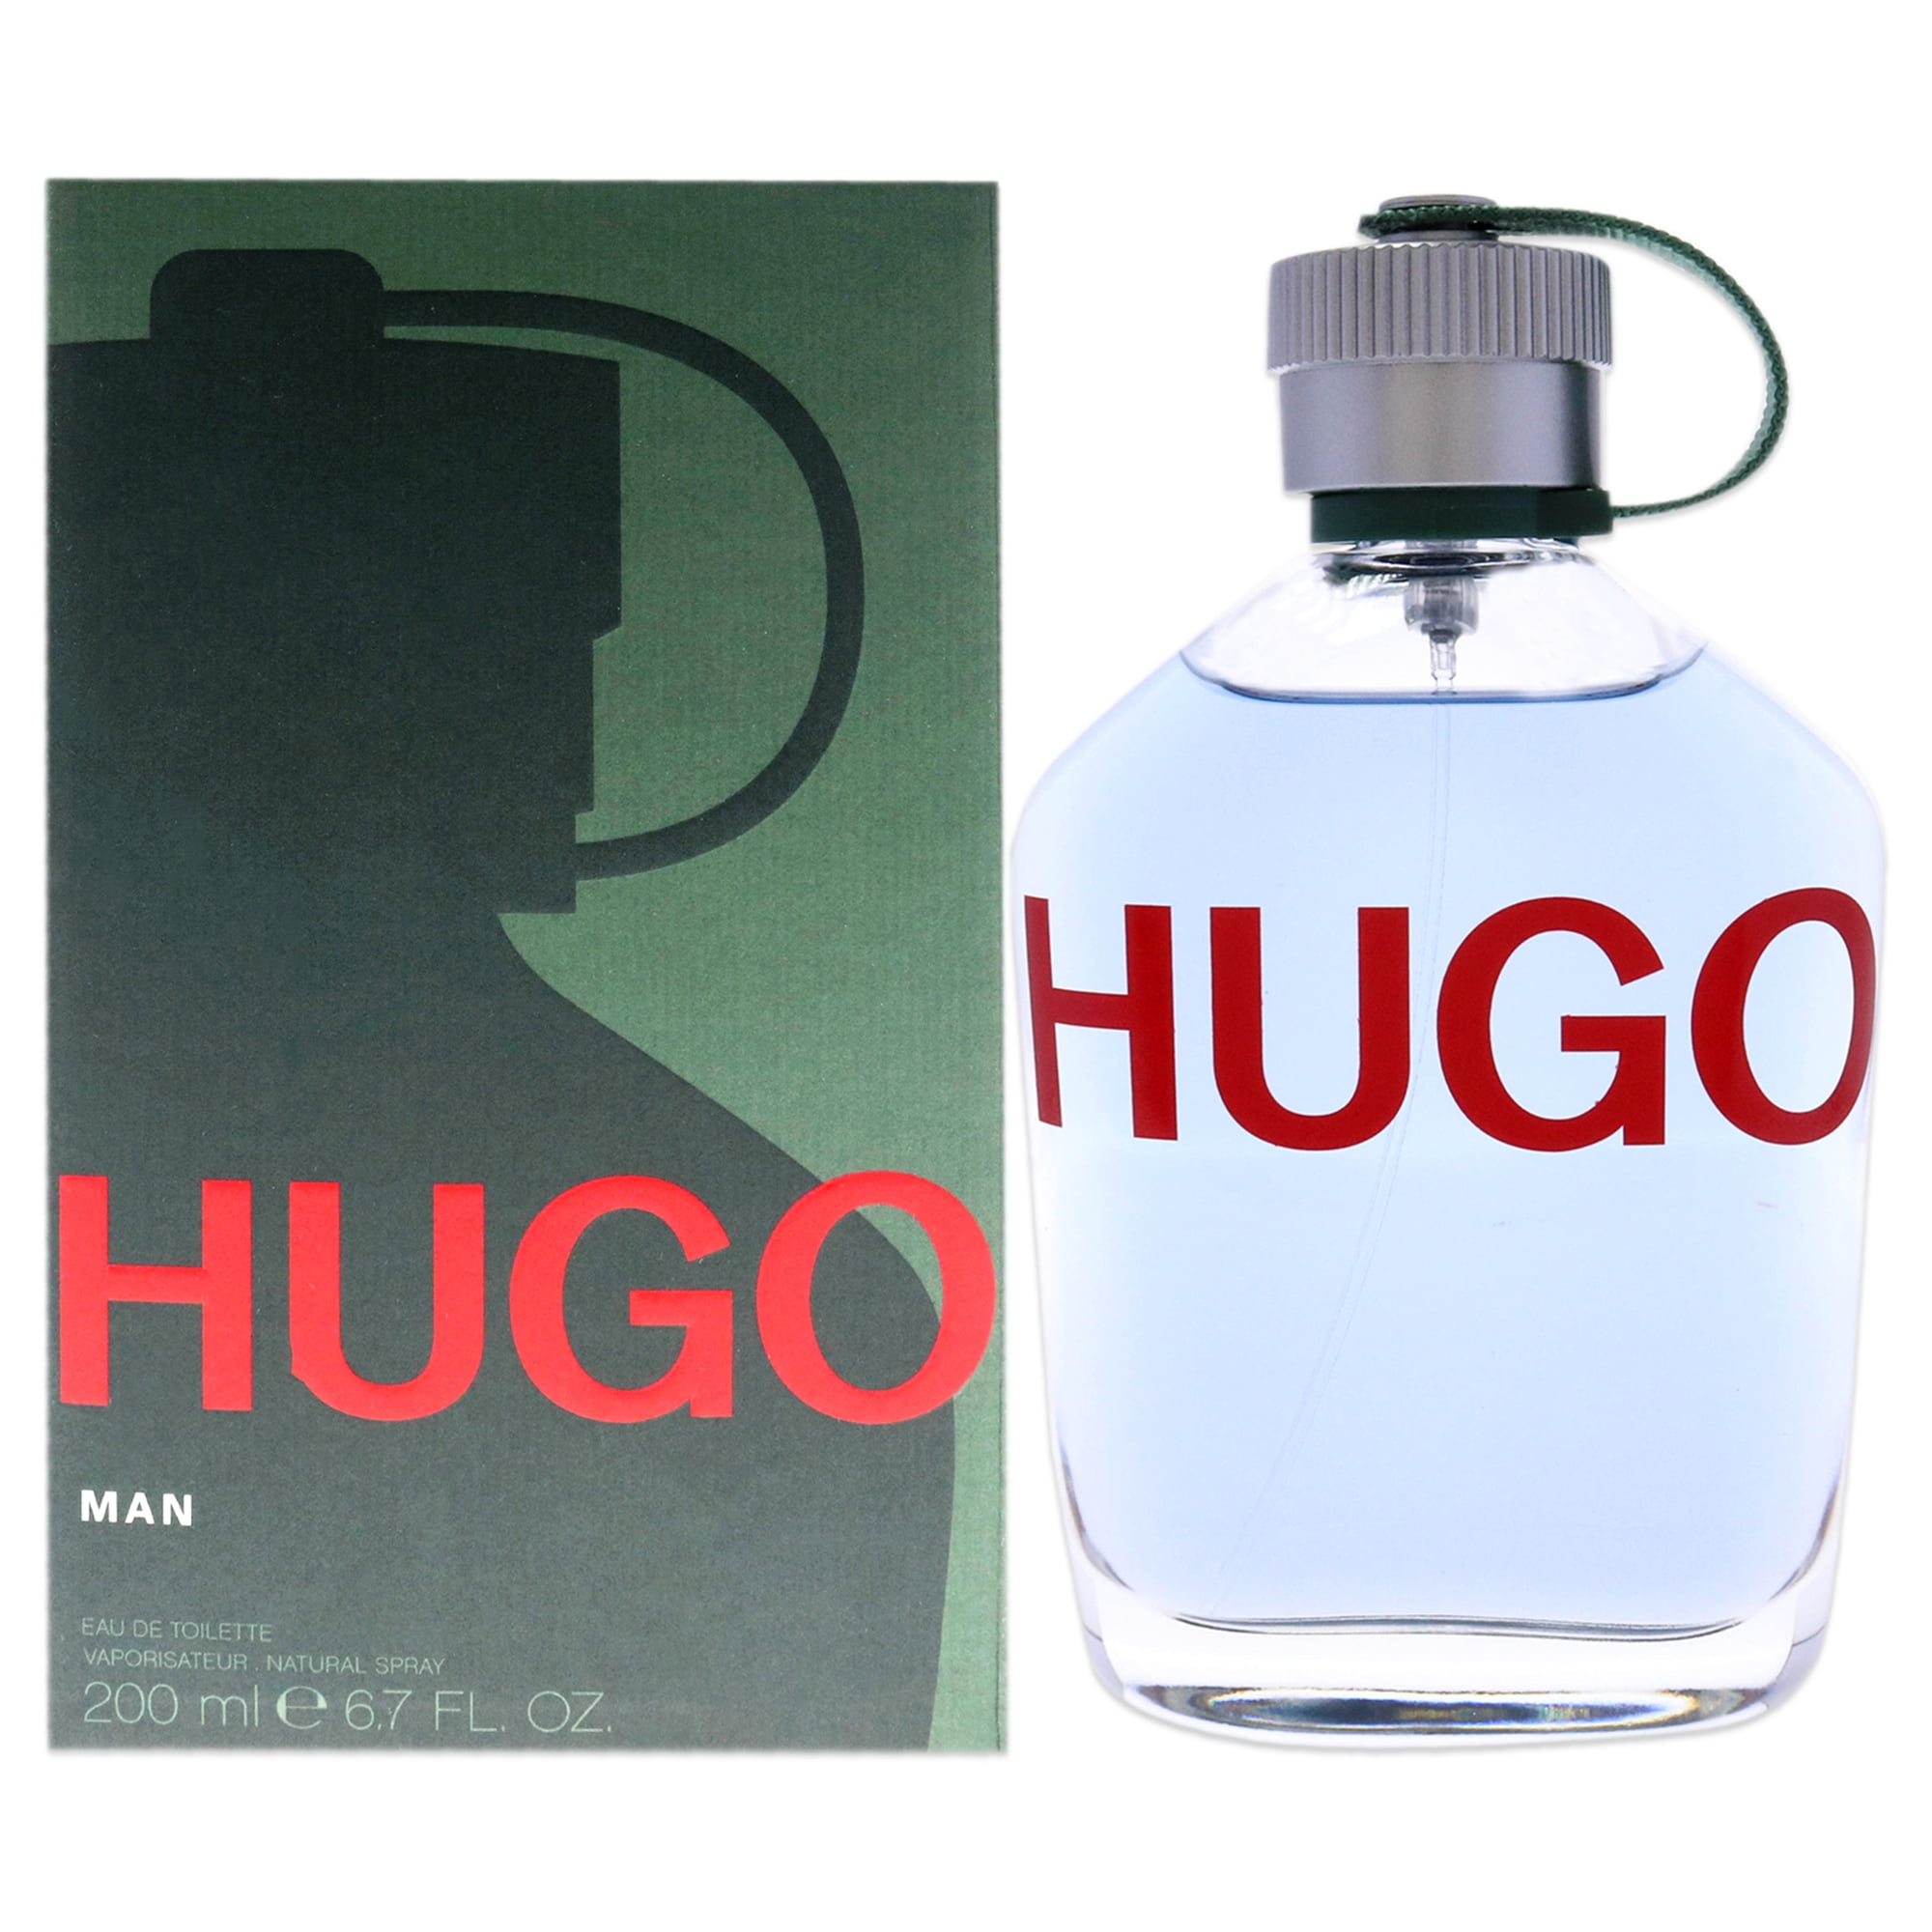 HUGO BY HUGO BOSS By HUGO BOSS For MEN - Walmart.com